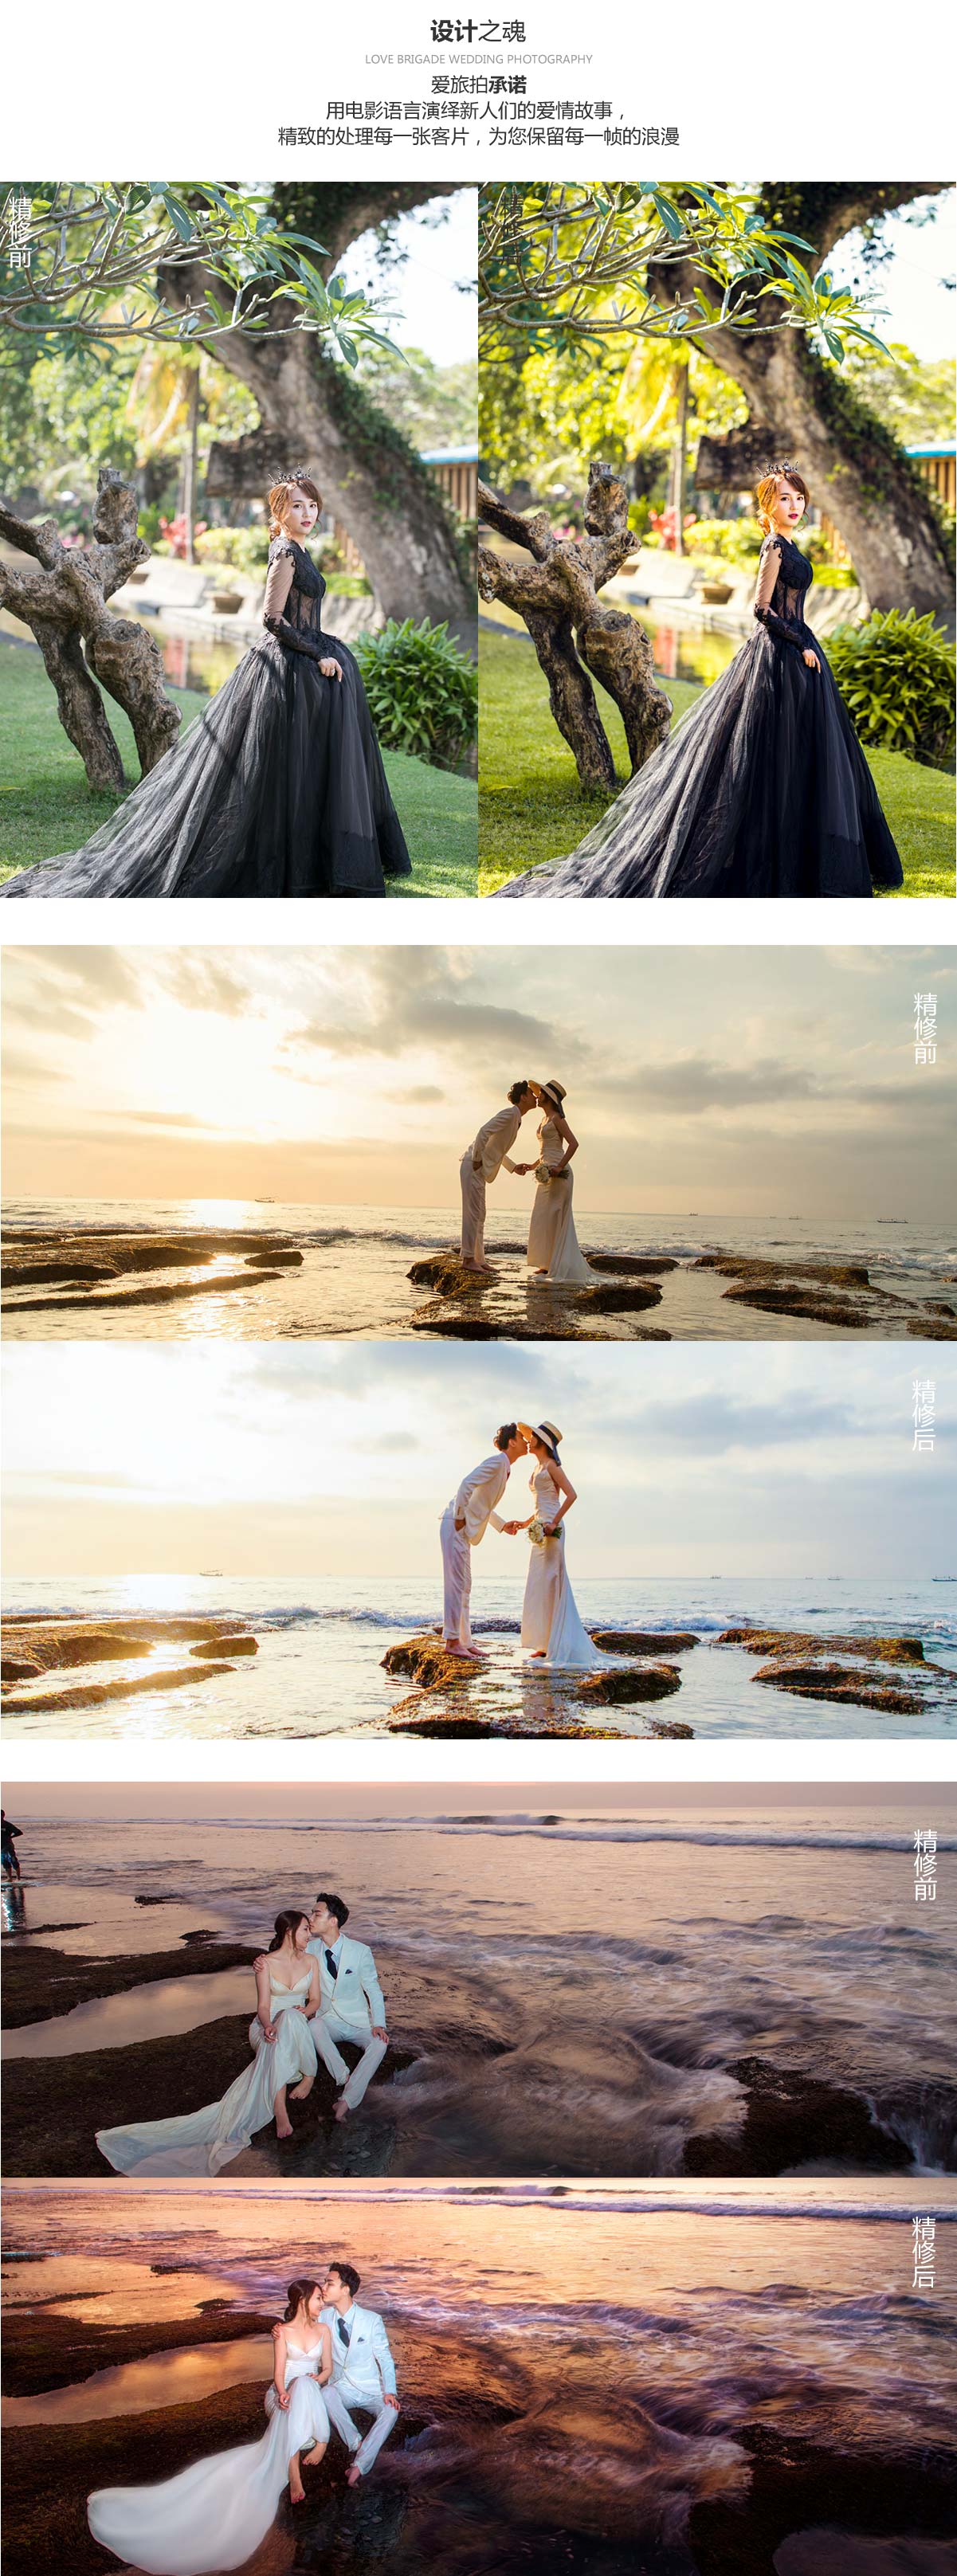 爱旅拍-巴厘岛蜜月|旅行|婚礼|婚拍|一站式服务